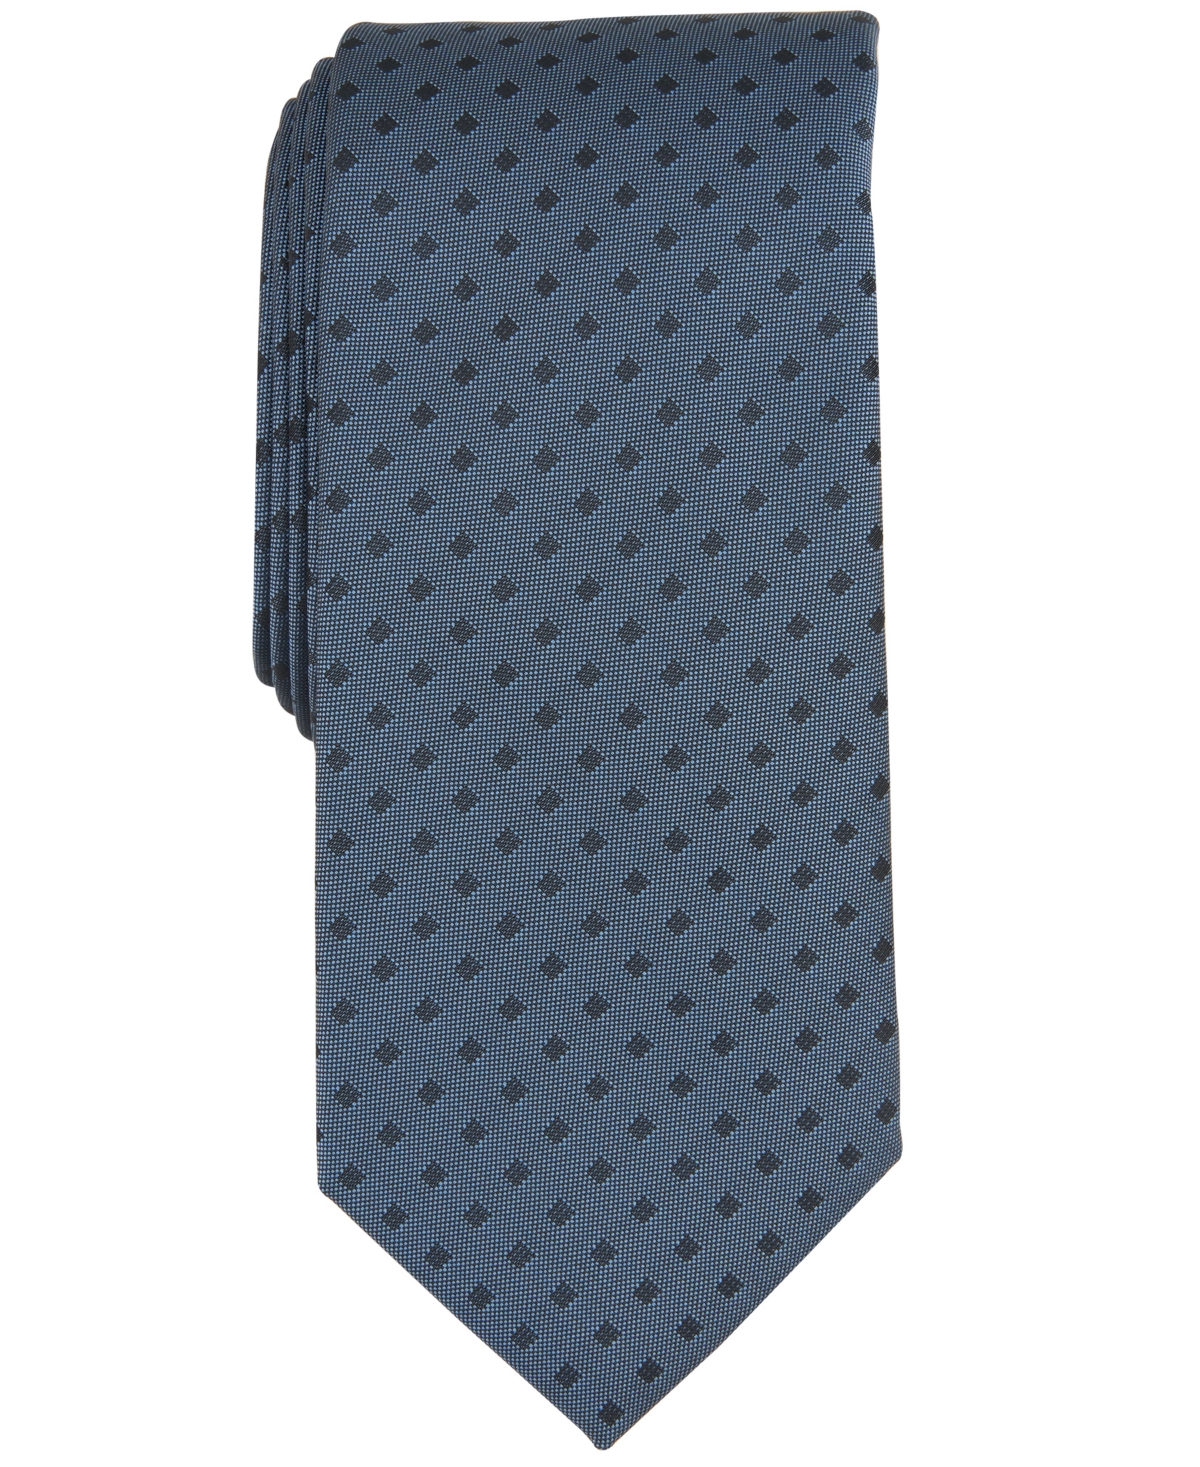 Men's Dublin Dot Tie, Created for Macy's - Denim